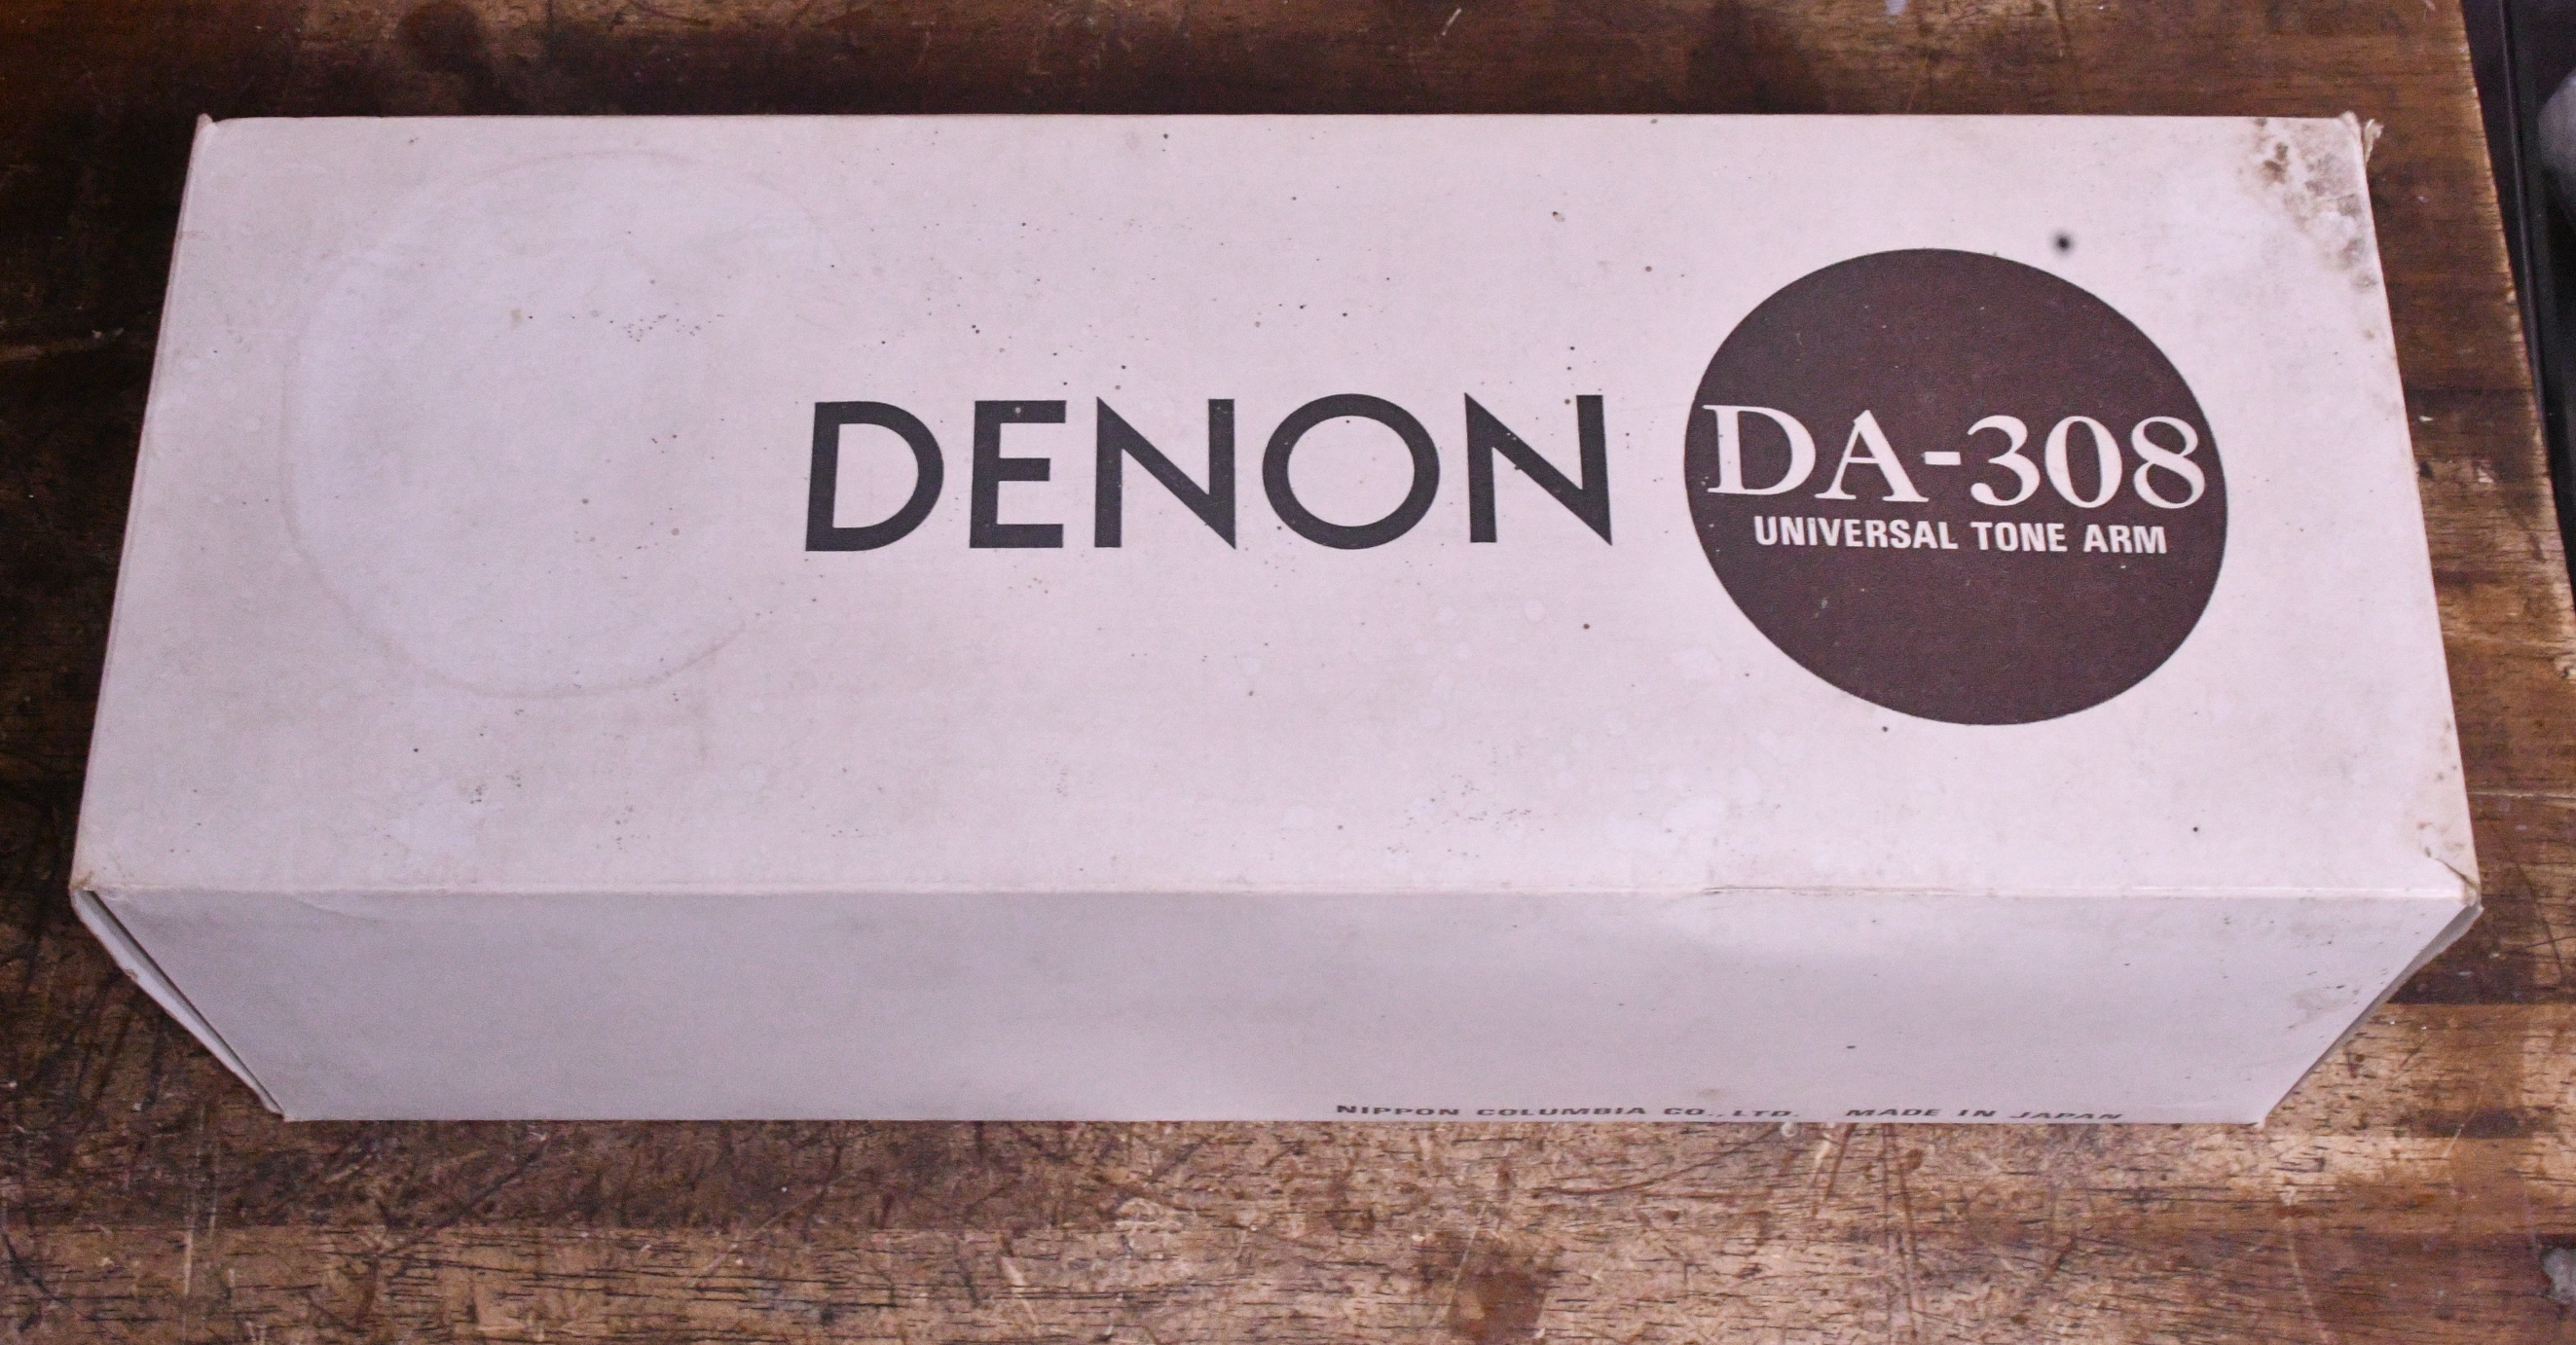 Denon DA-308 12inches long tonearm for professional original box, manual, cable